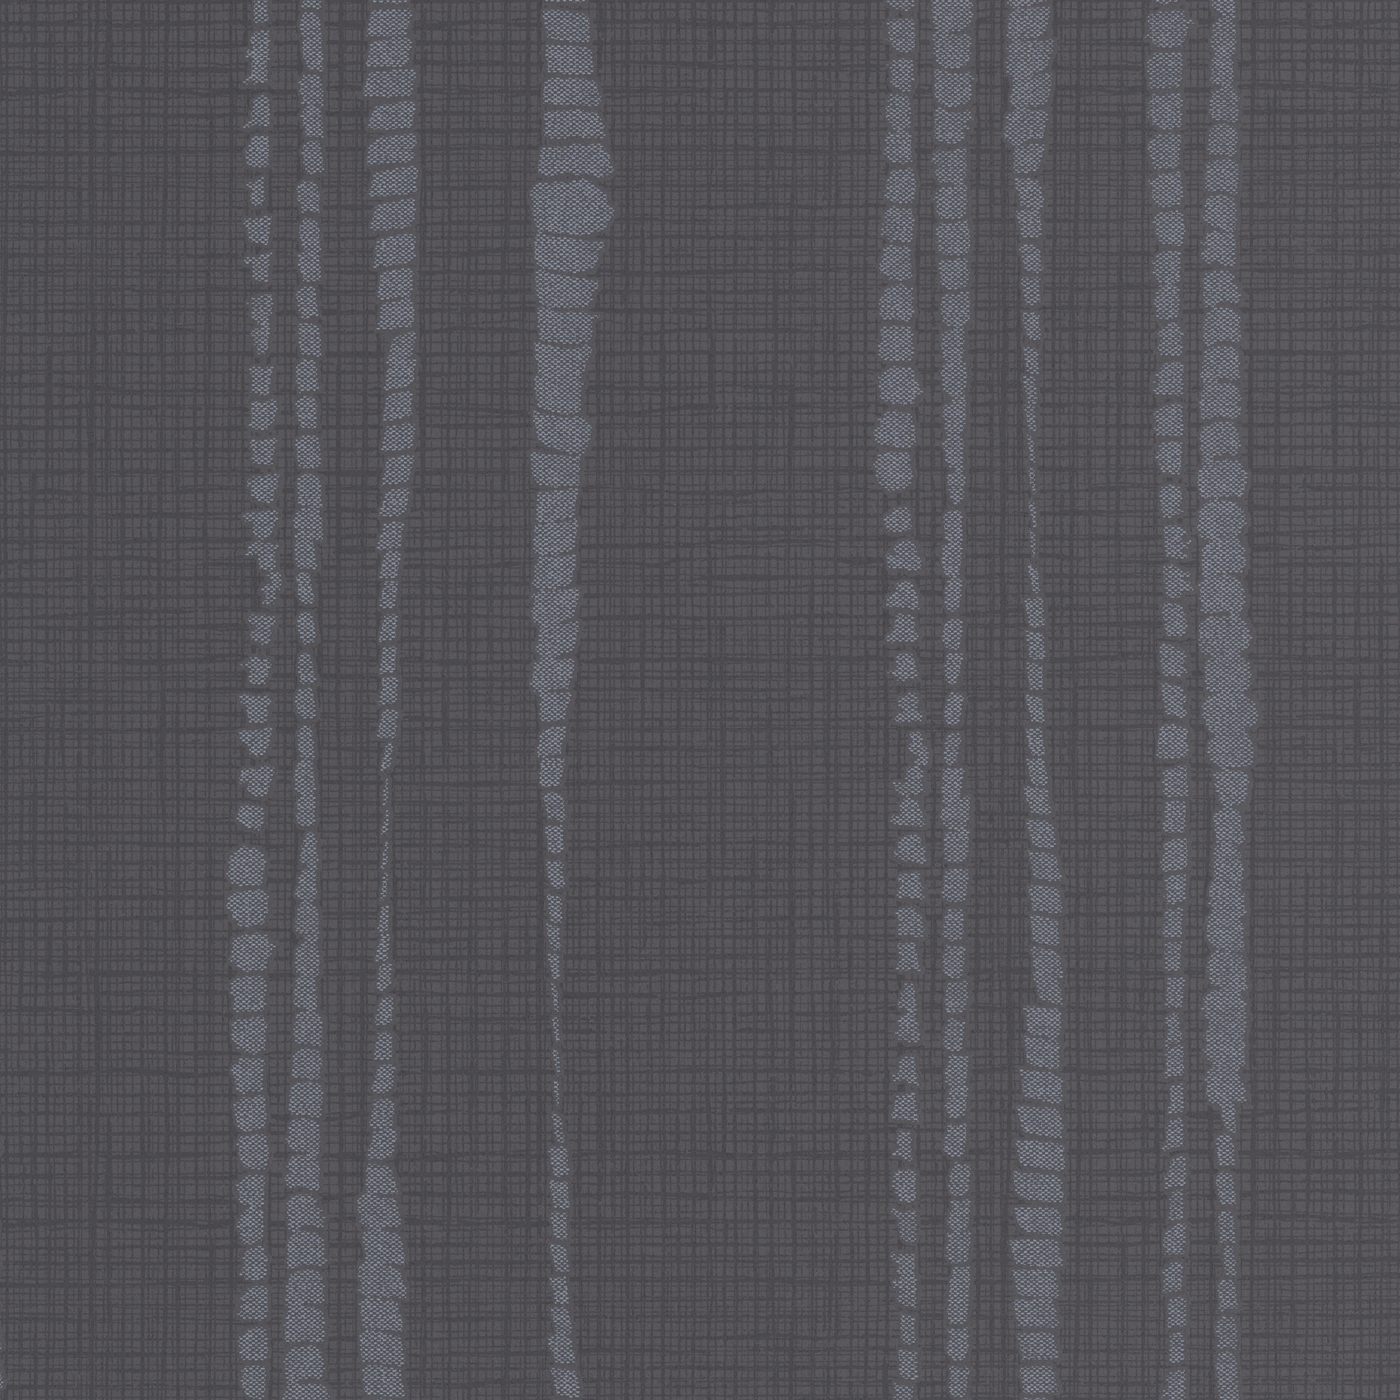 Graham Brown Kelly Hoppen Style Laddered Stripe Wallpaper